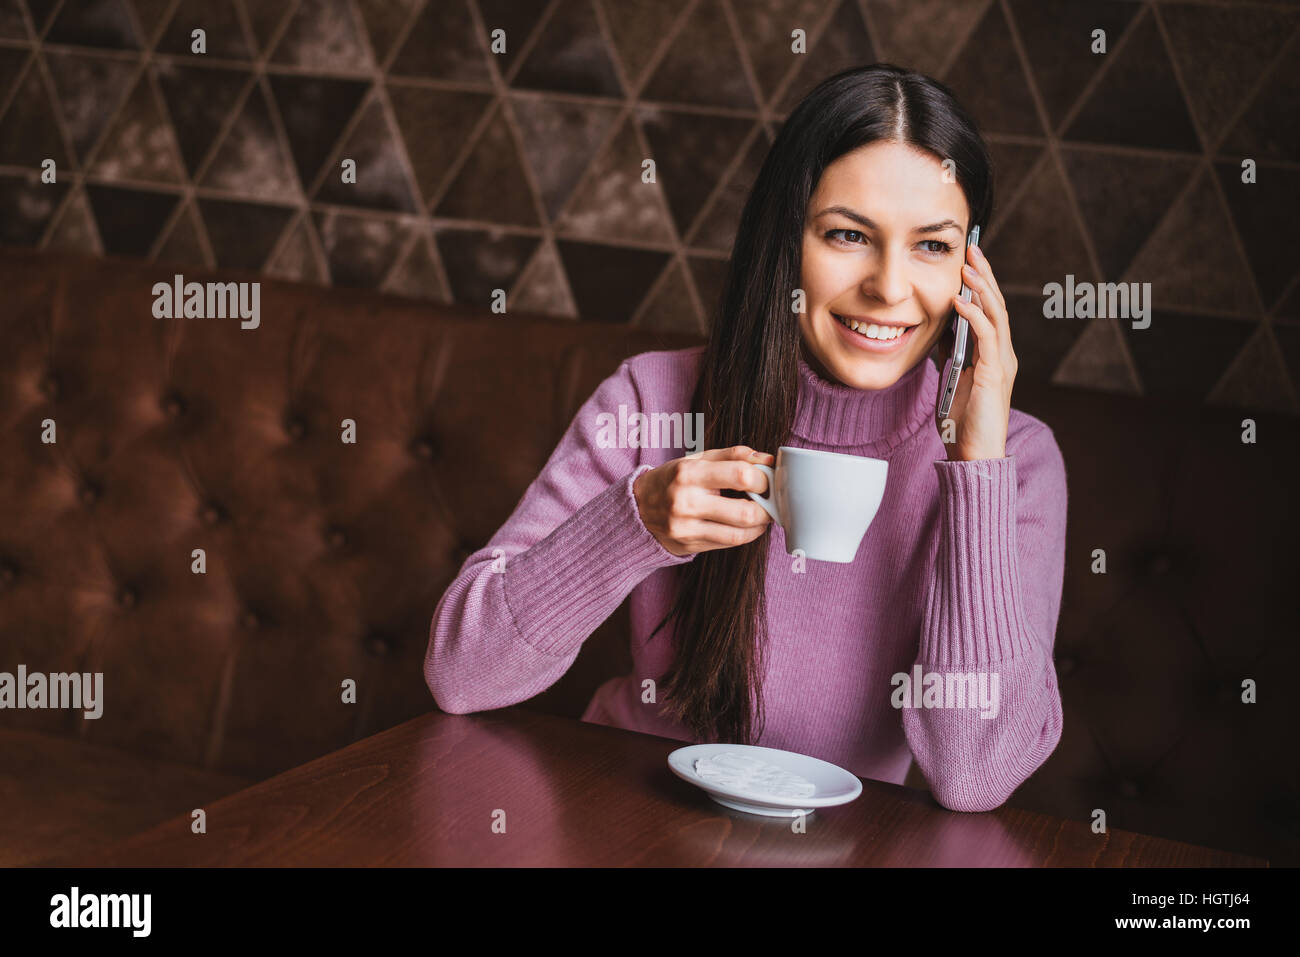 Jeune femme cheveux longs attrayants à l'aide de smart phone while sitting at coffee shop Banque D'Images